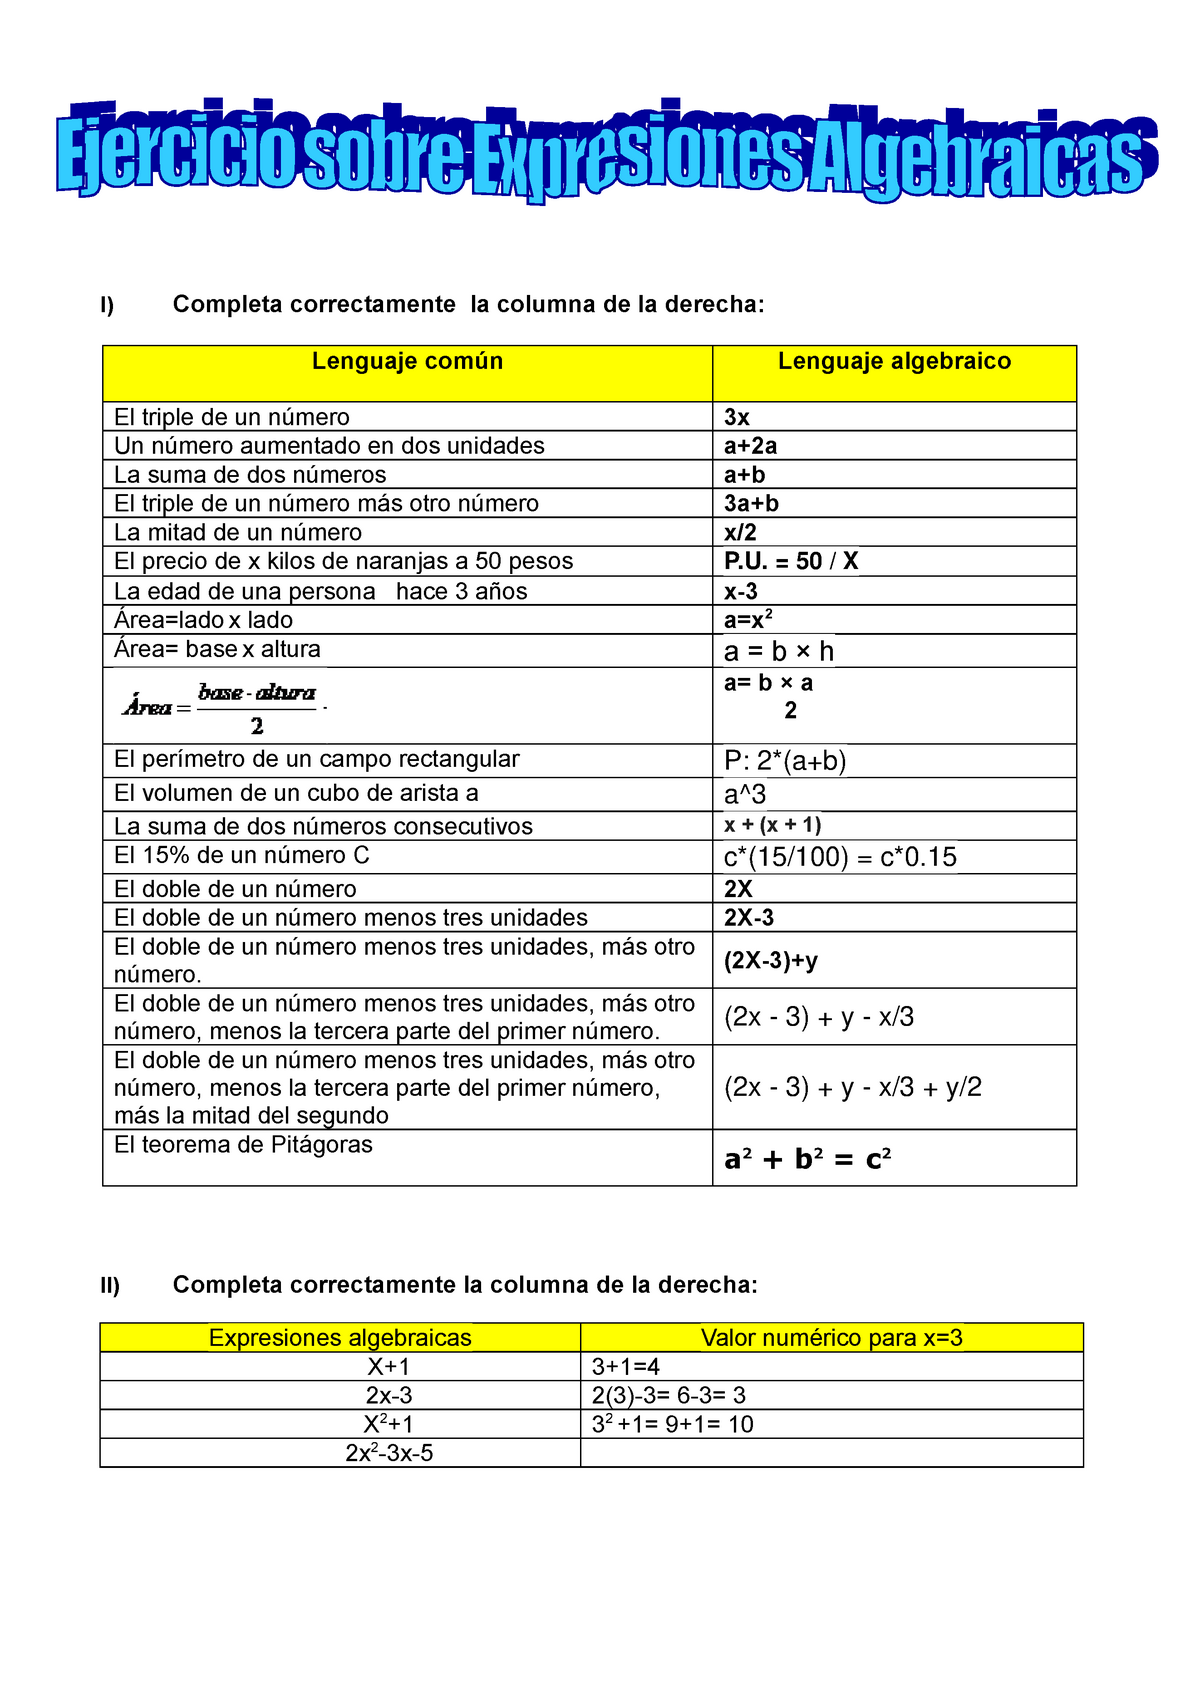 Ejercicios De Lenguaje Algebraico A Lenguaje Comun Resueltos 2581